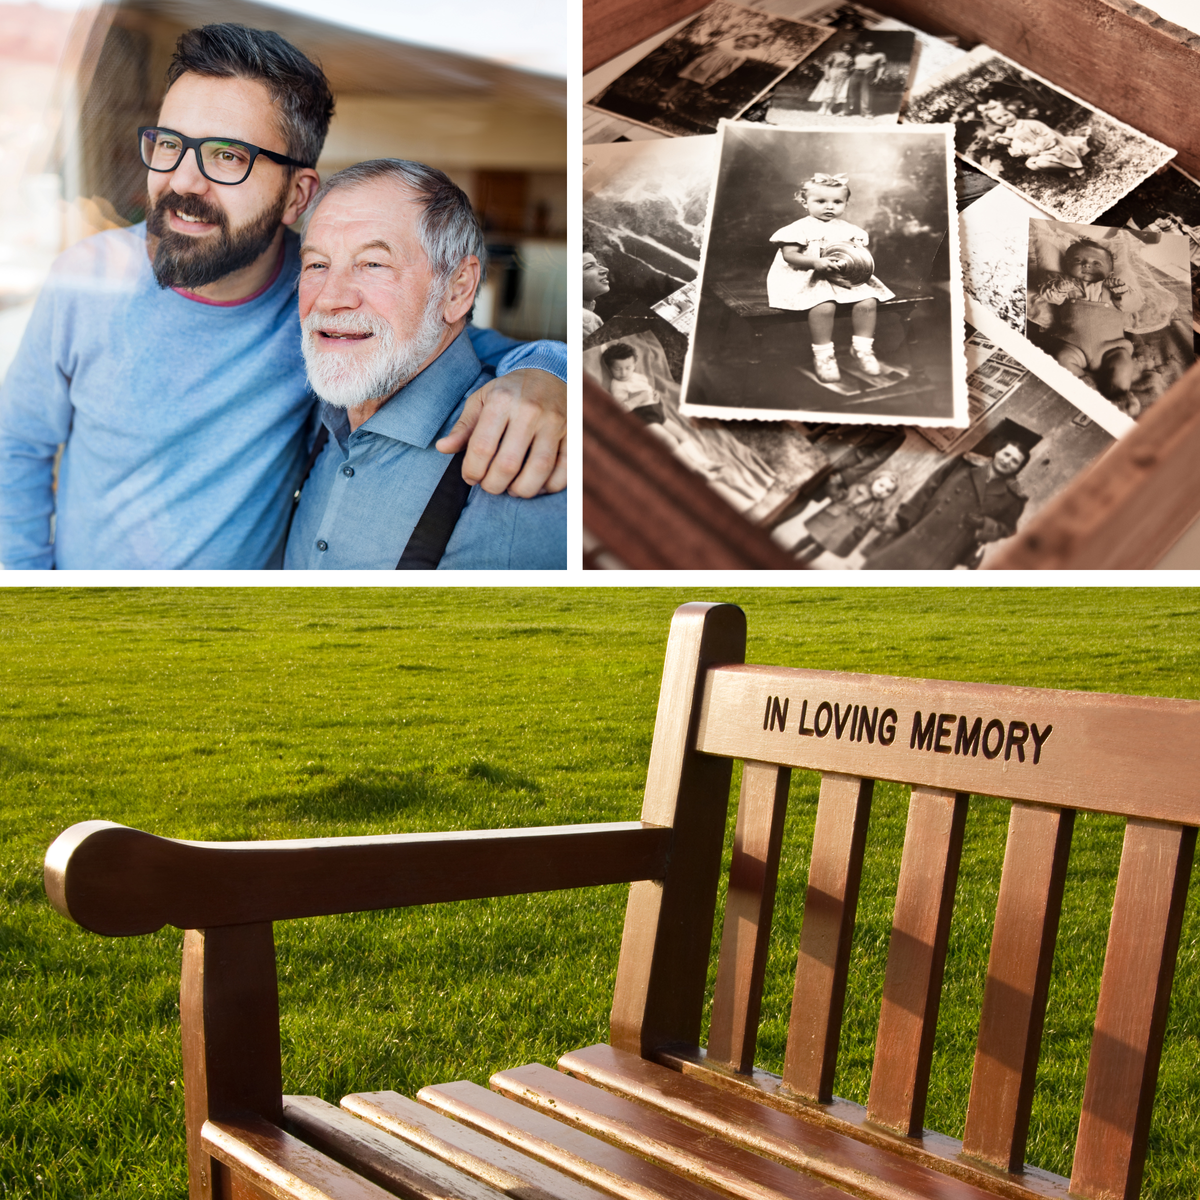 Man with dad, keepsake photos, memorial bench.